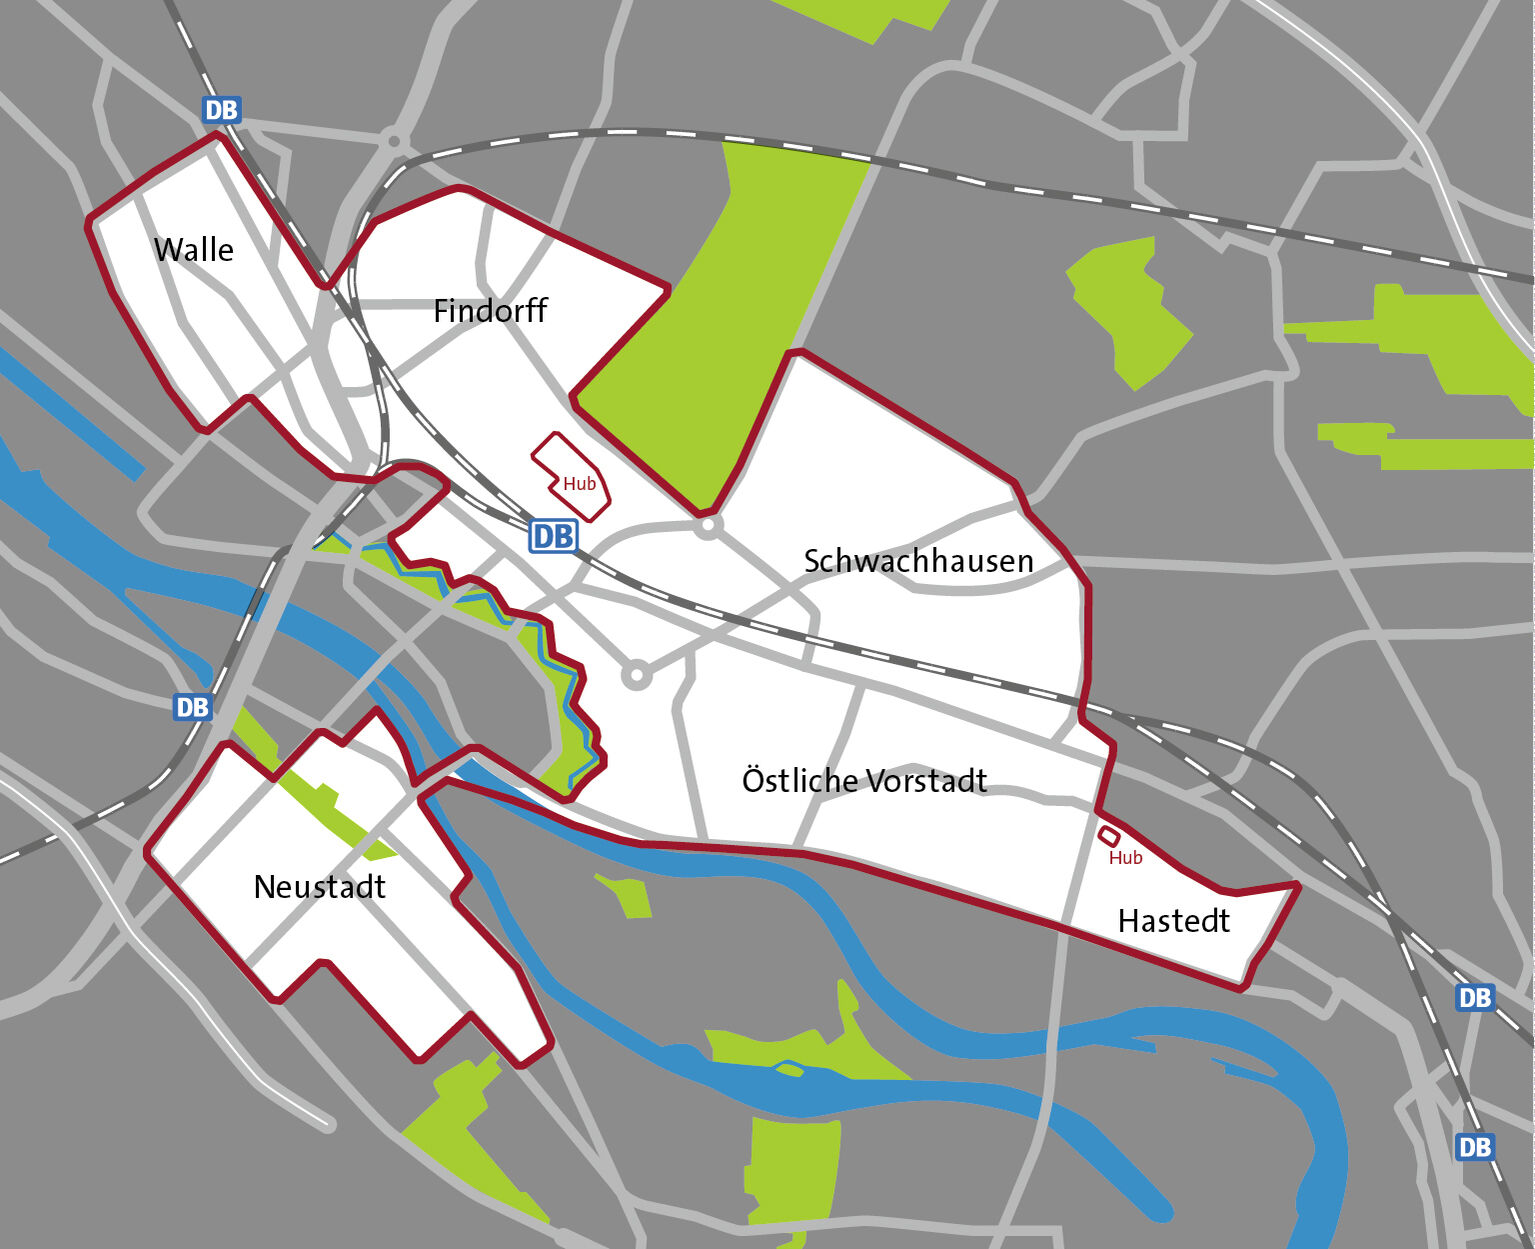 Karte des Bereiches in dem smumo, der Free-Floating-Dienst von cambio CarSharing, in Bremen abgestellt werden Darf.  